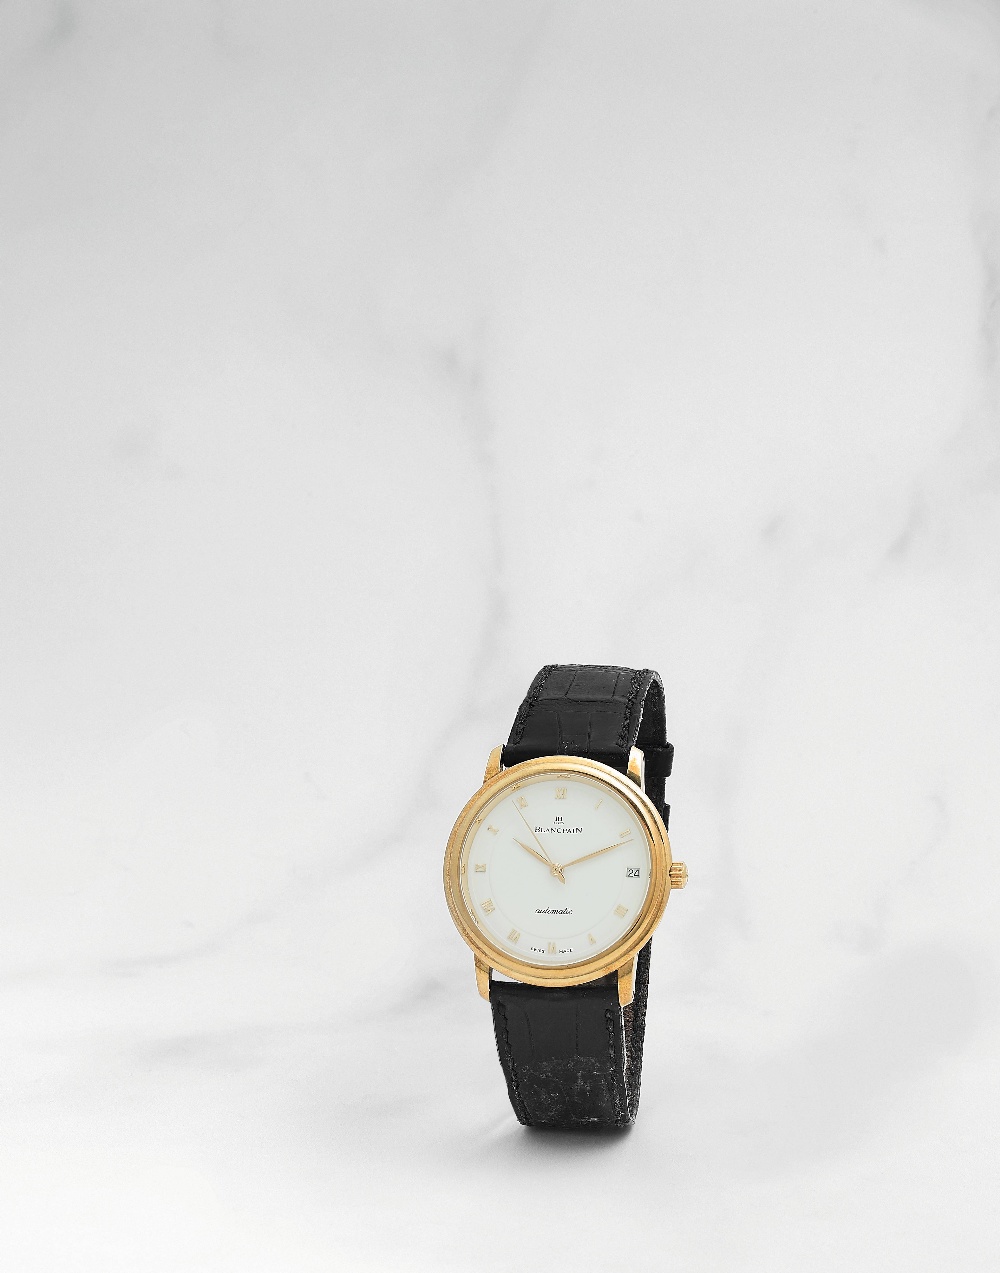 Blancpain. Montre bracelet en or jaune 18K (750) avec date mouvement automatique Blancpain. An 18... - Image 3 of 3